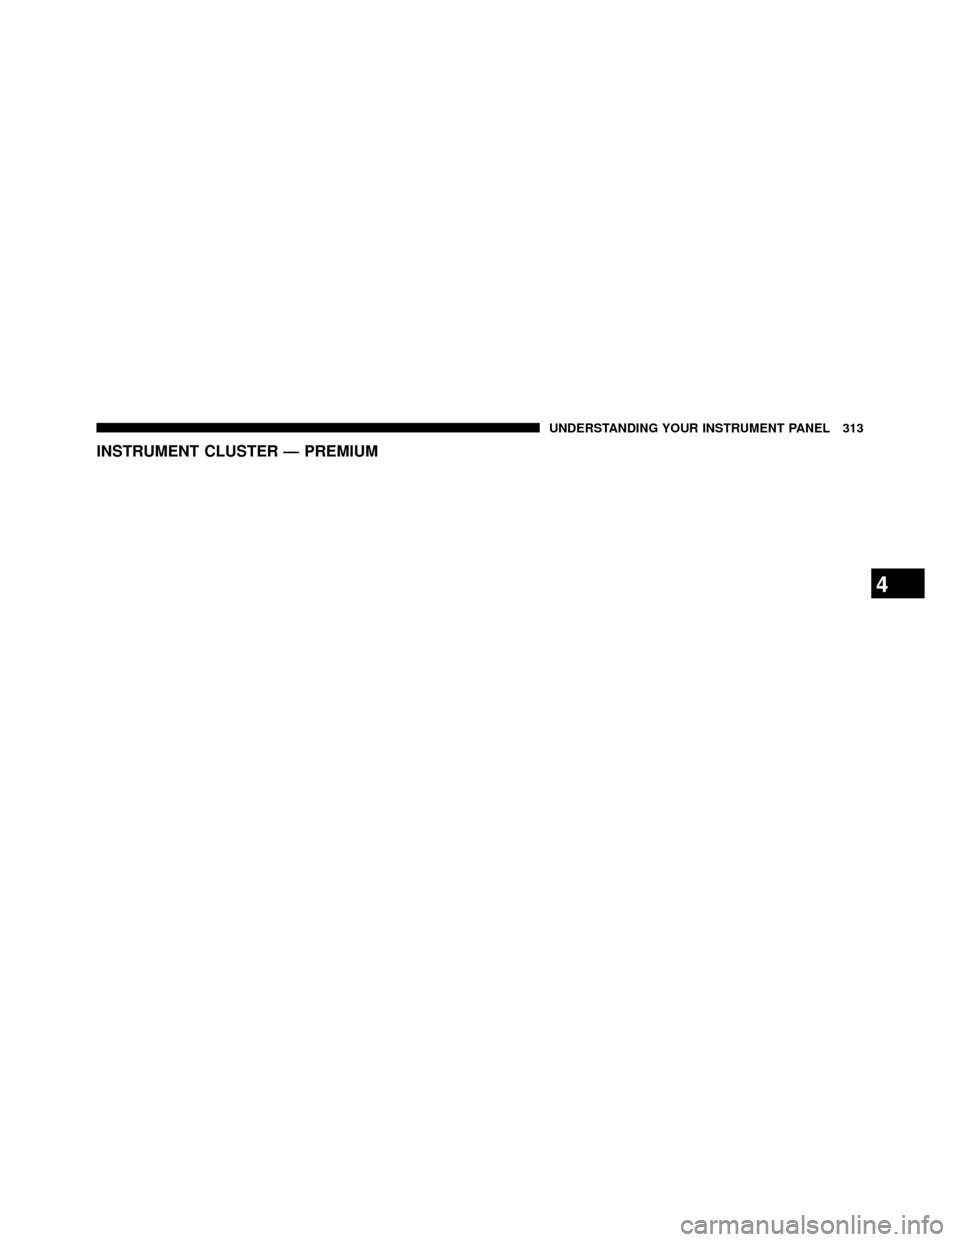 DODGE GRAND CARAVAN 2014 5.G Owners Manual INSTRUMENT CLUSTER — PREMIUM
4
UNDERSTANDING YOUR INSTRUMENT PANEL 313 